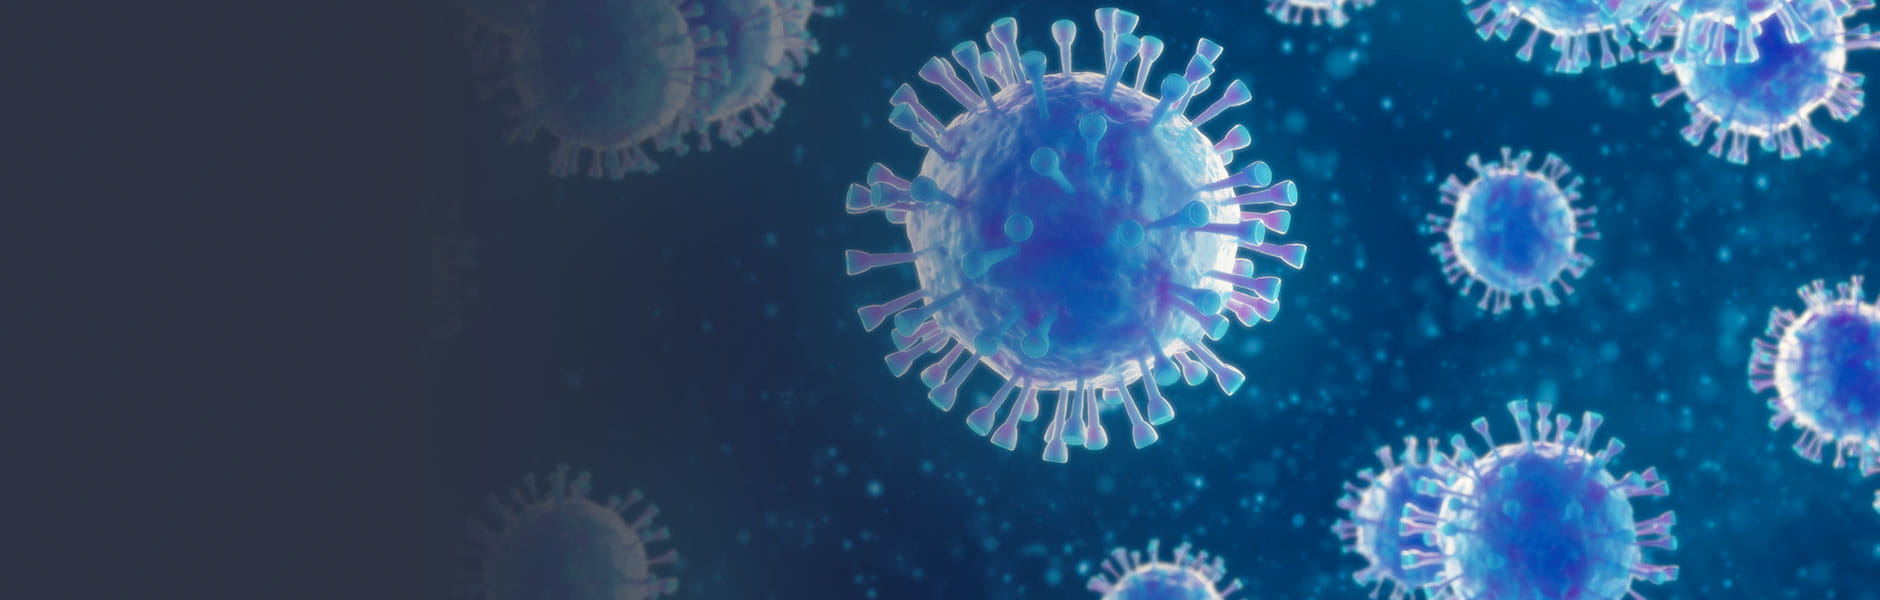 coronavirus background image